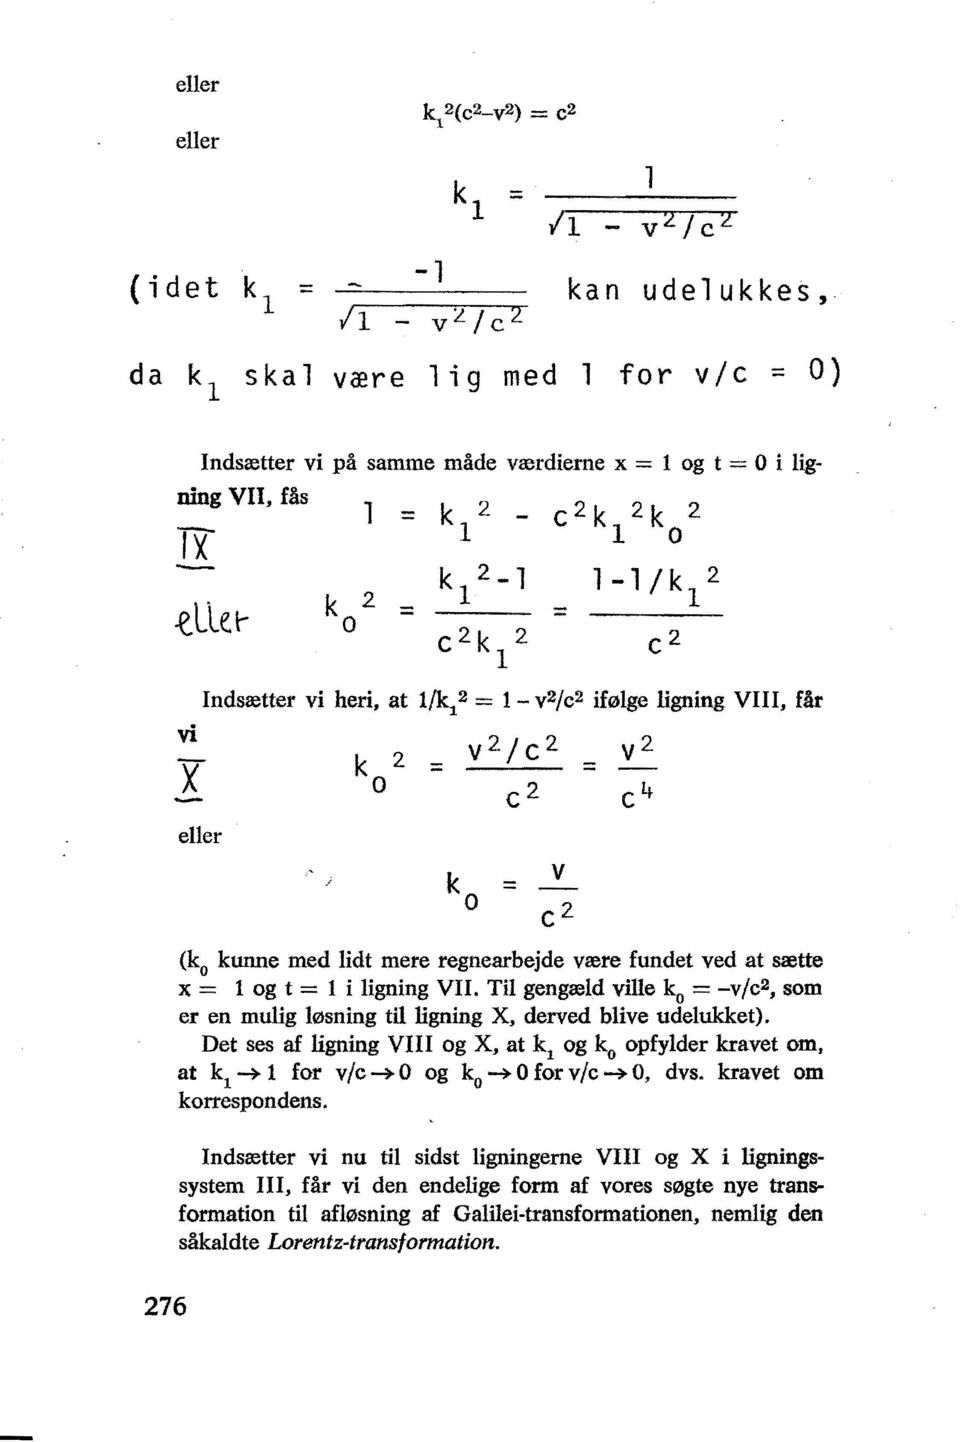 VII. Til gengæld ville ko = -V/C2, som er en mulig løsning til ligning X, derved blive udelukket).